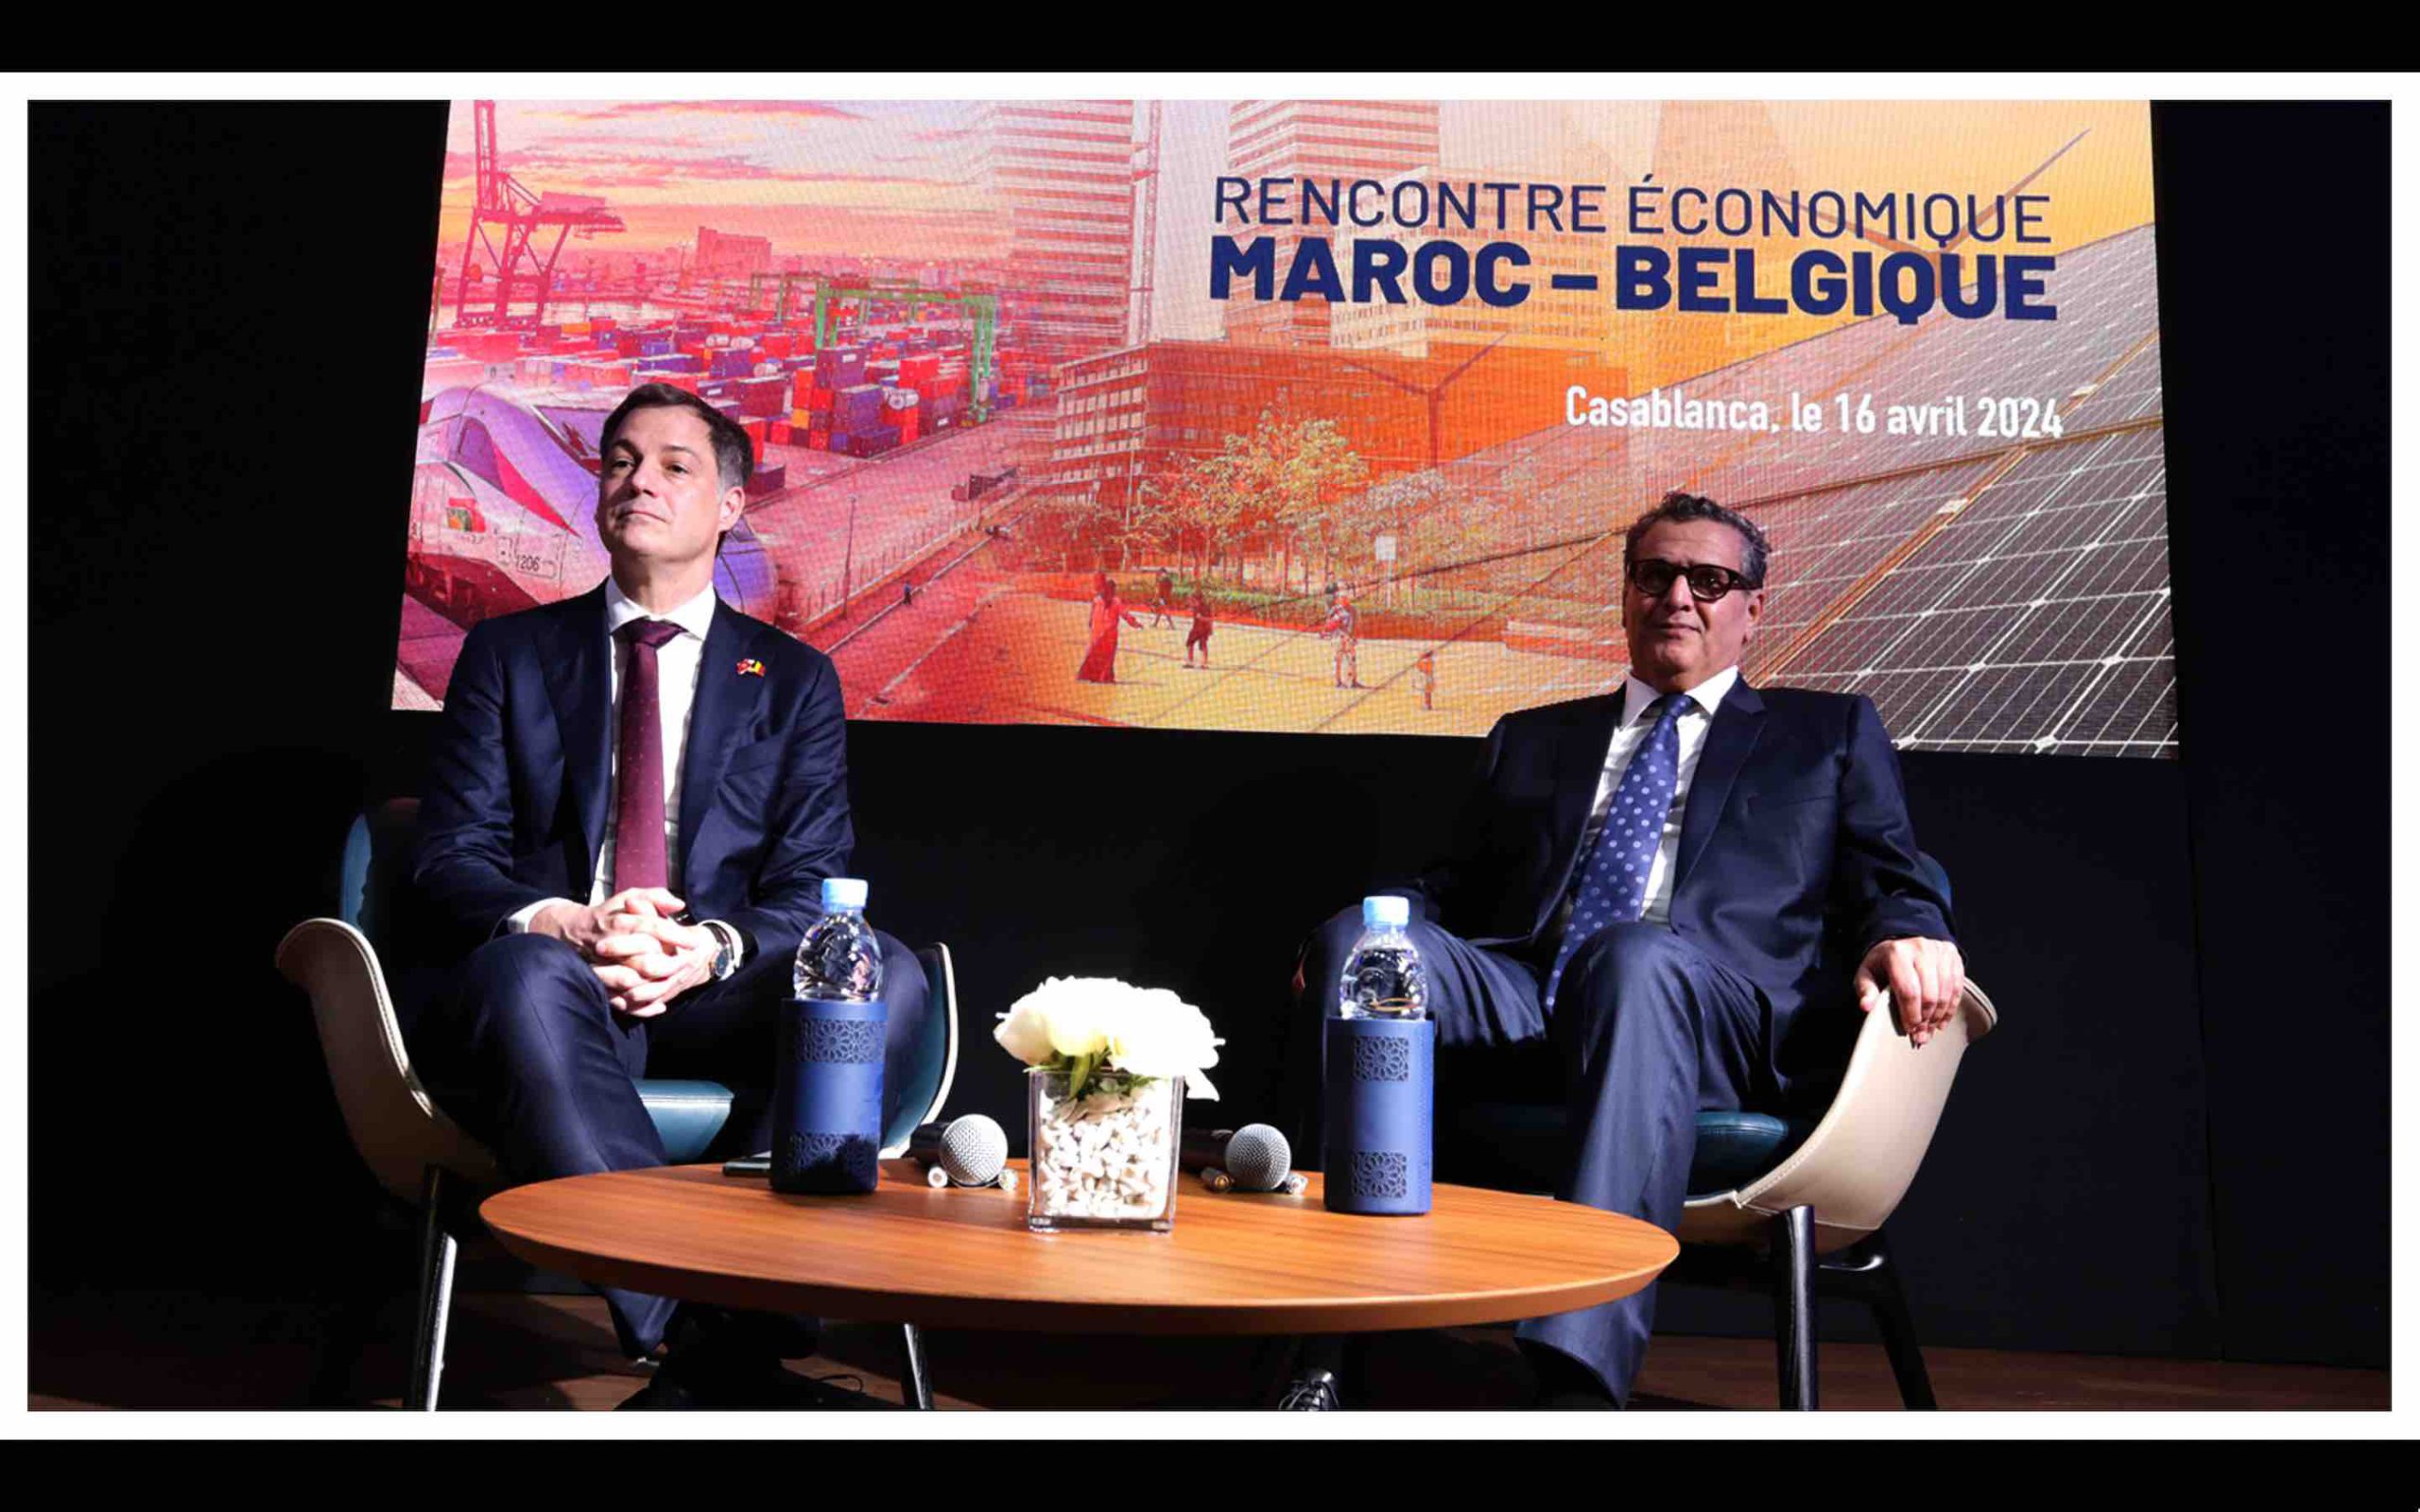 Rencontre économique Maroc-Belgique